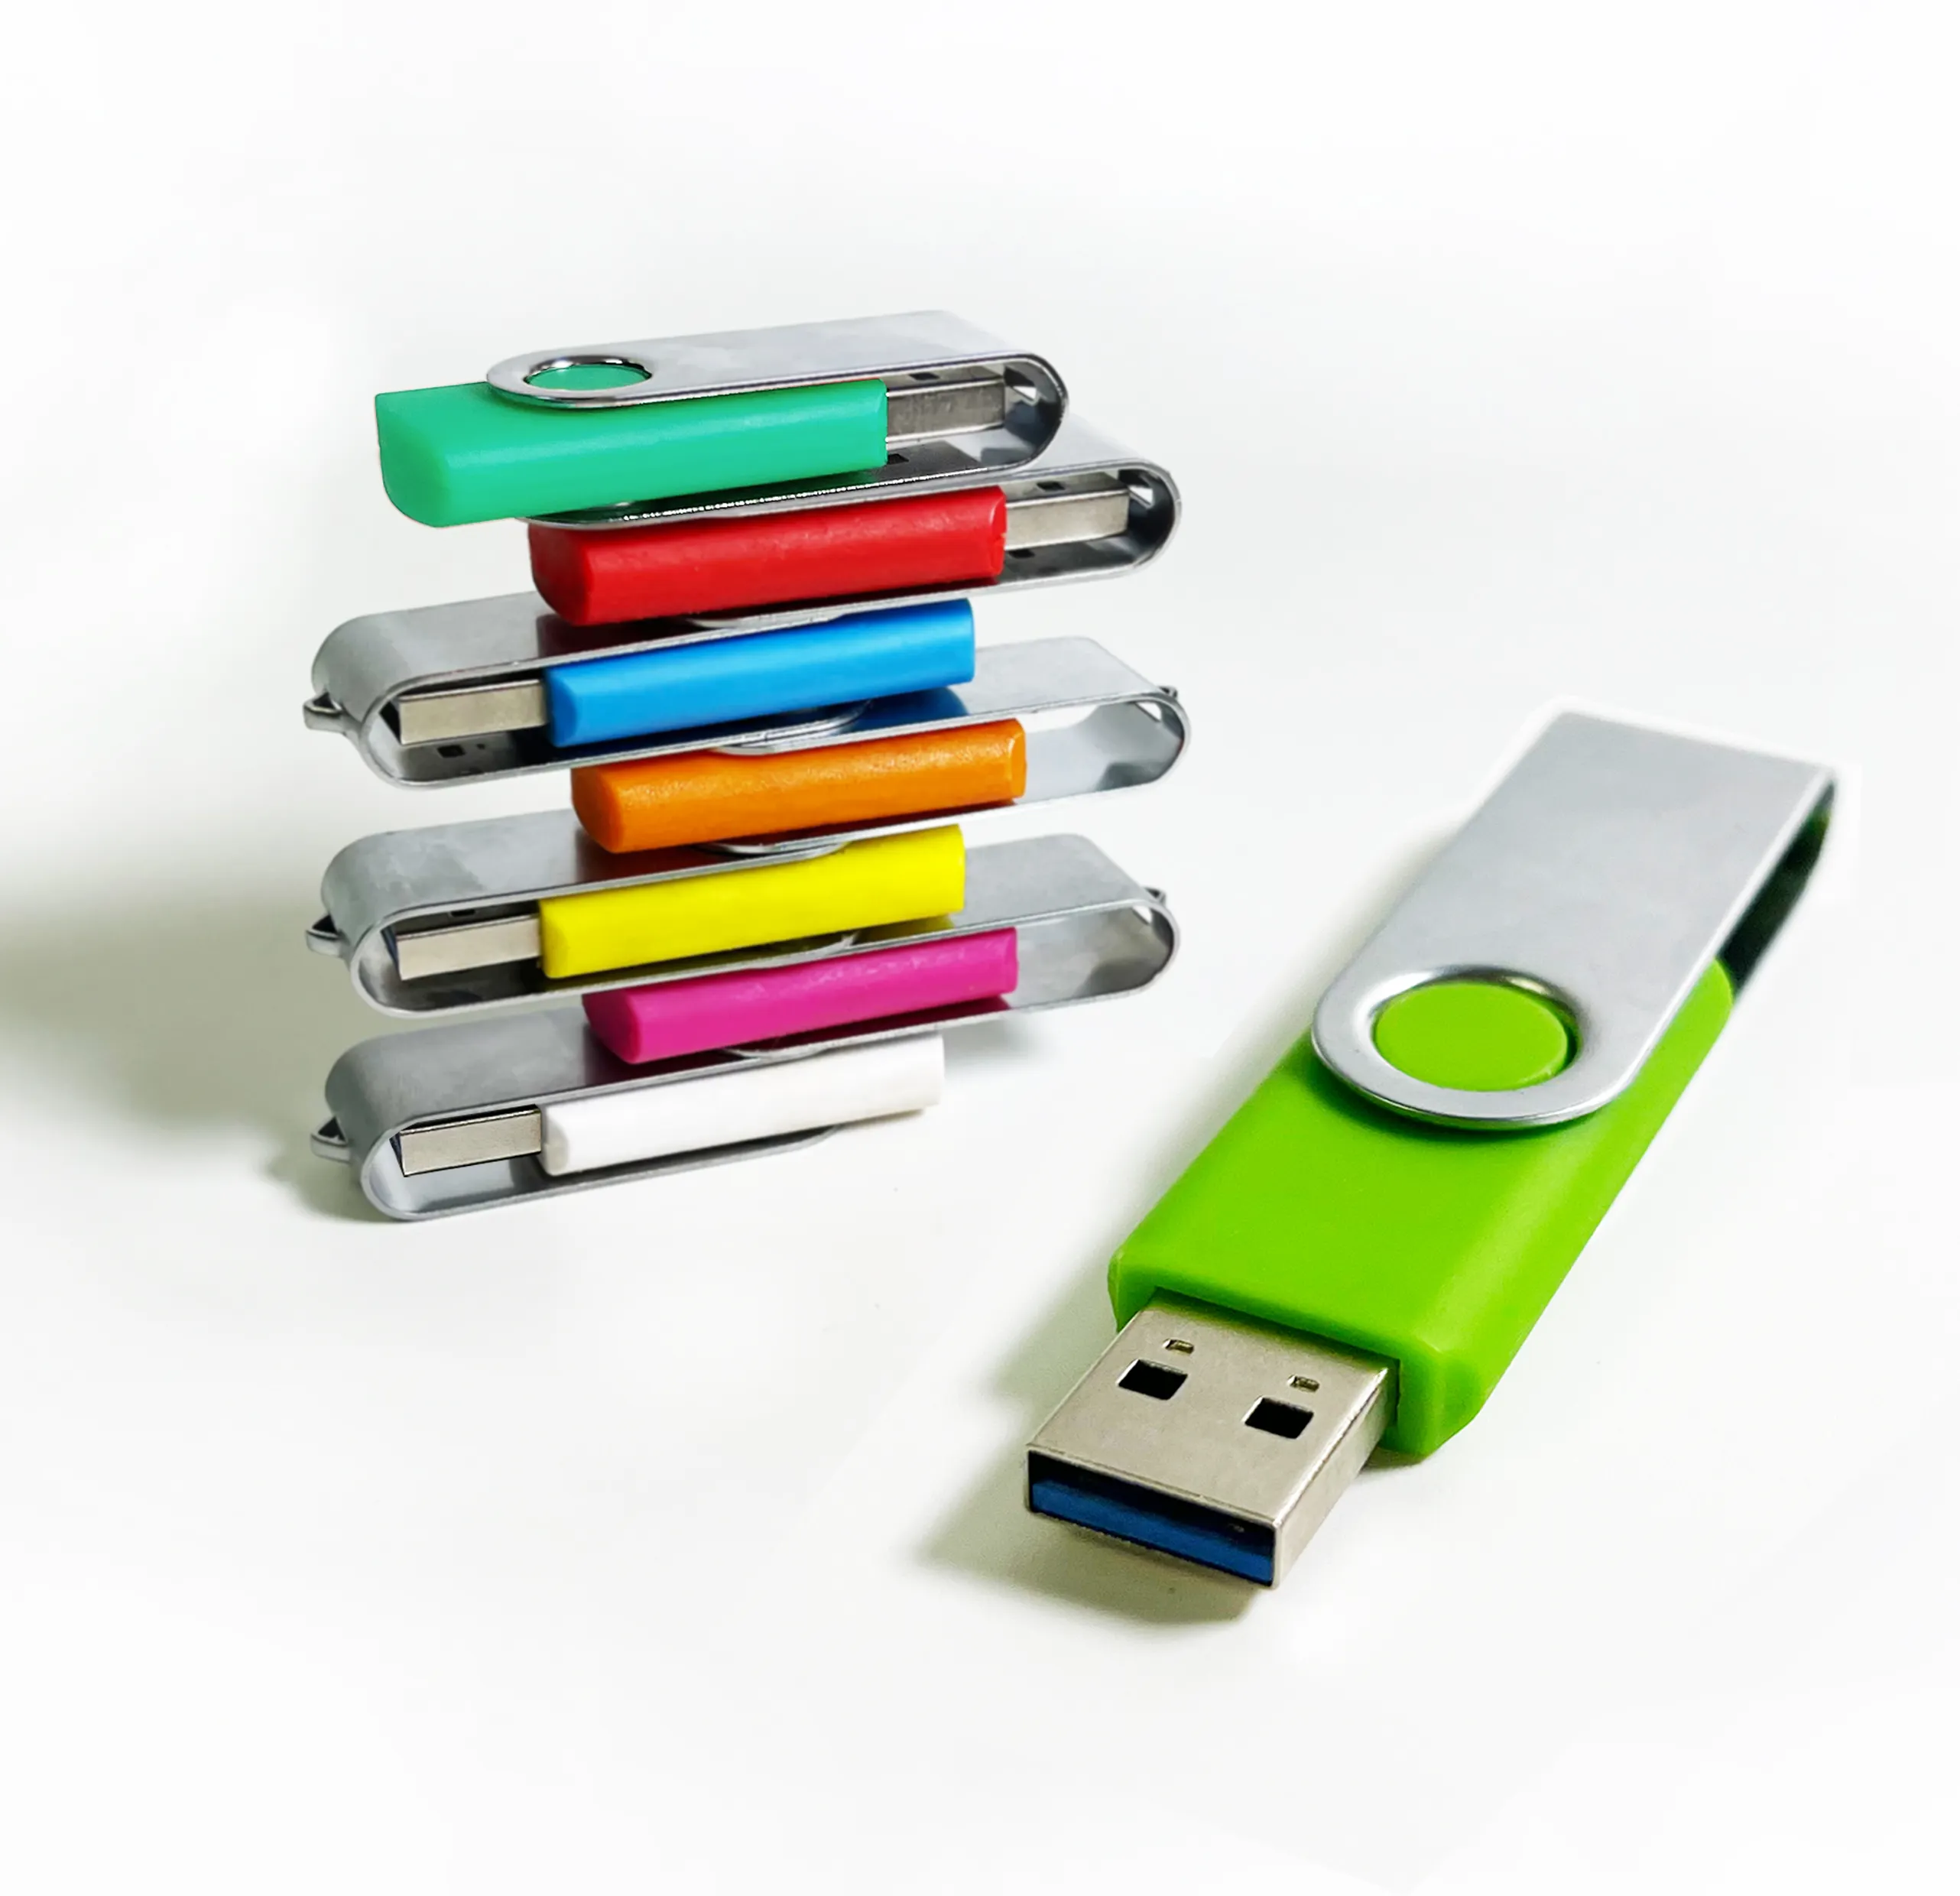 Flash drive putar USB 2.0 3.0 kustom, tongkat usb kustom 16GB 32GB 64GB 128GB 256GB, hadiah perusahaan